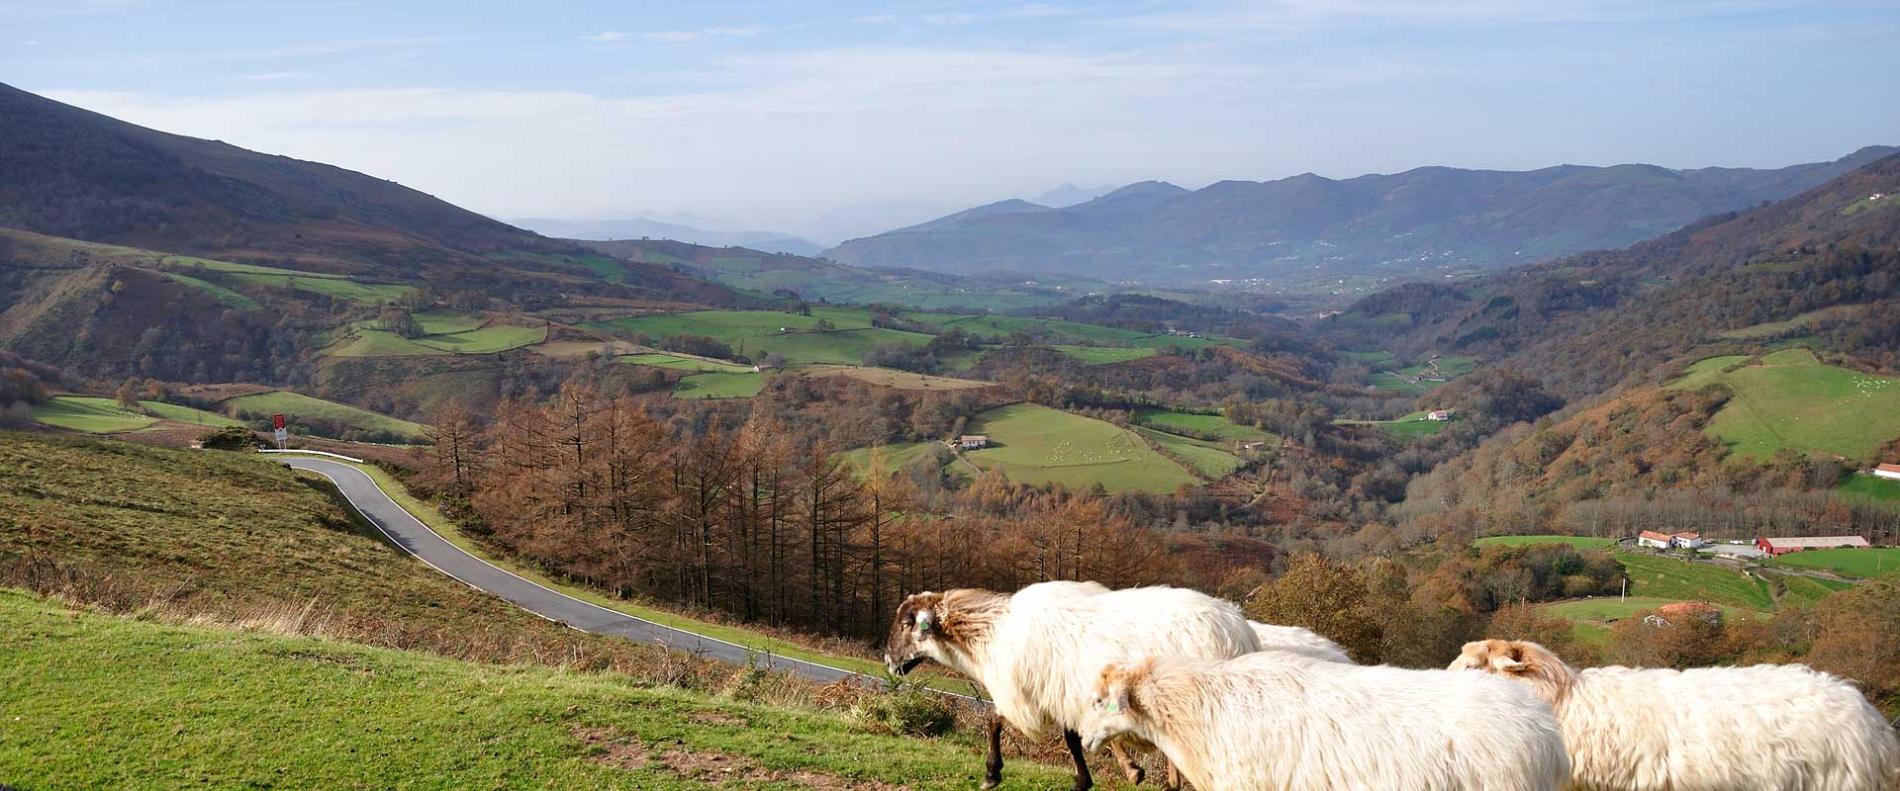 Brebis et paysage du Pays Basque